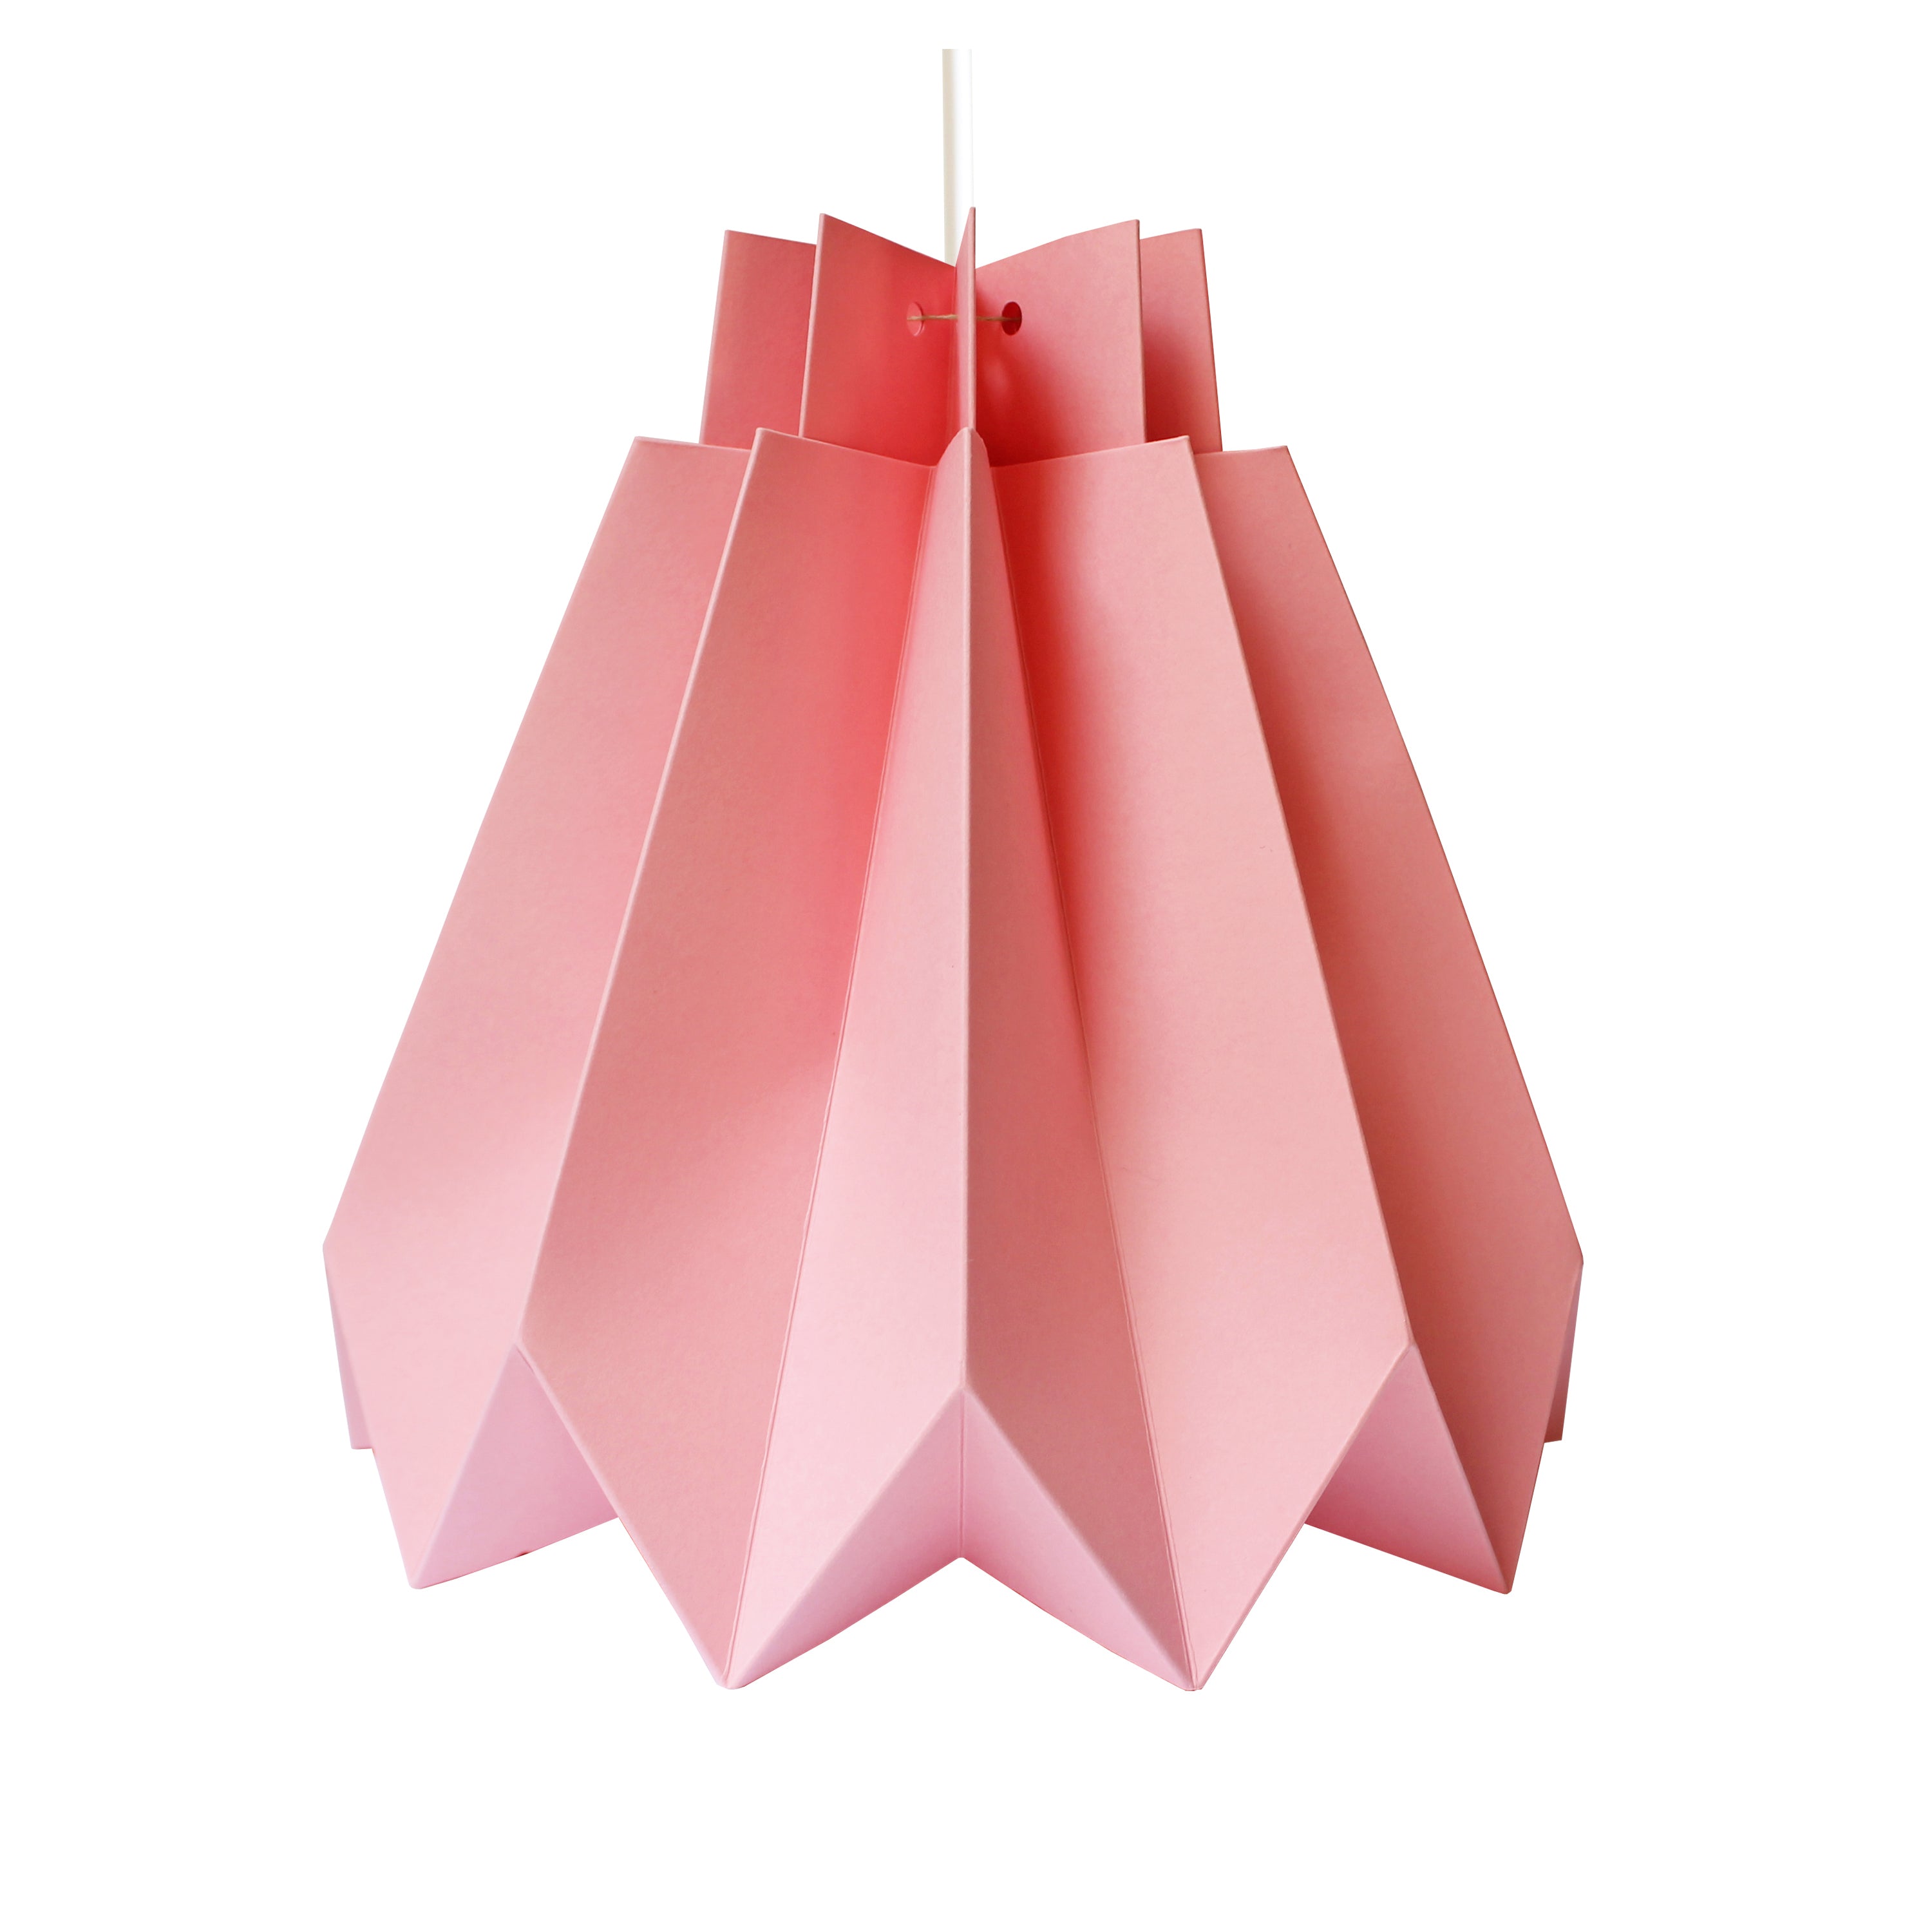 suspension origami en papier - kit diy